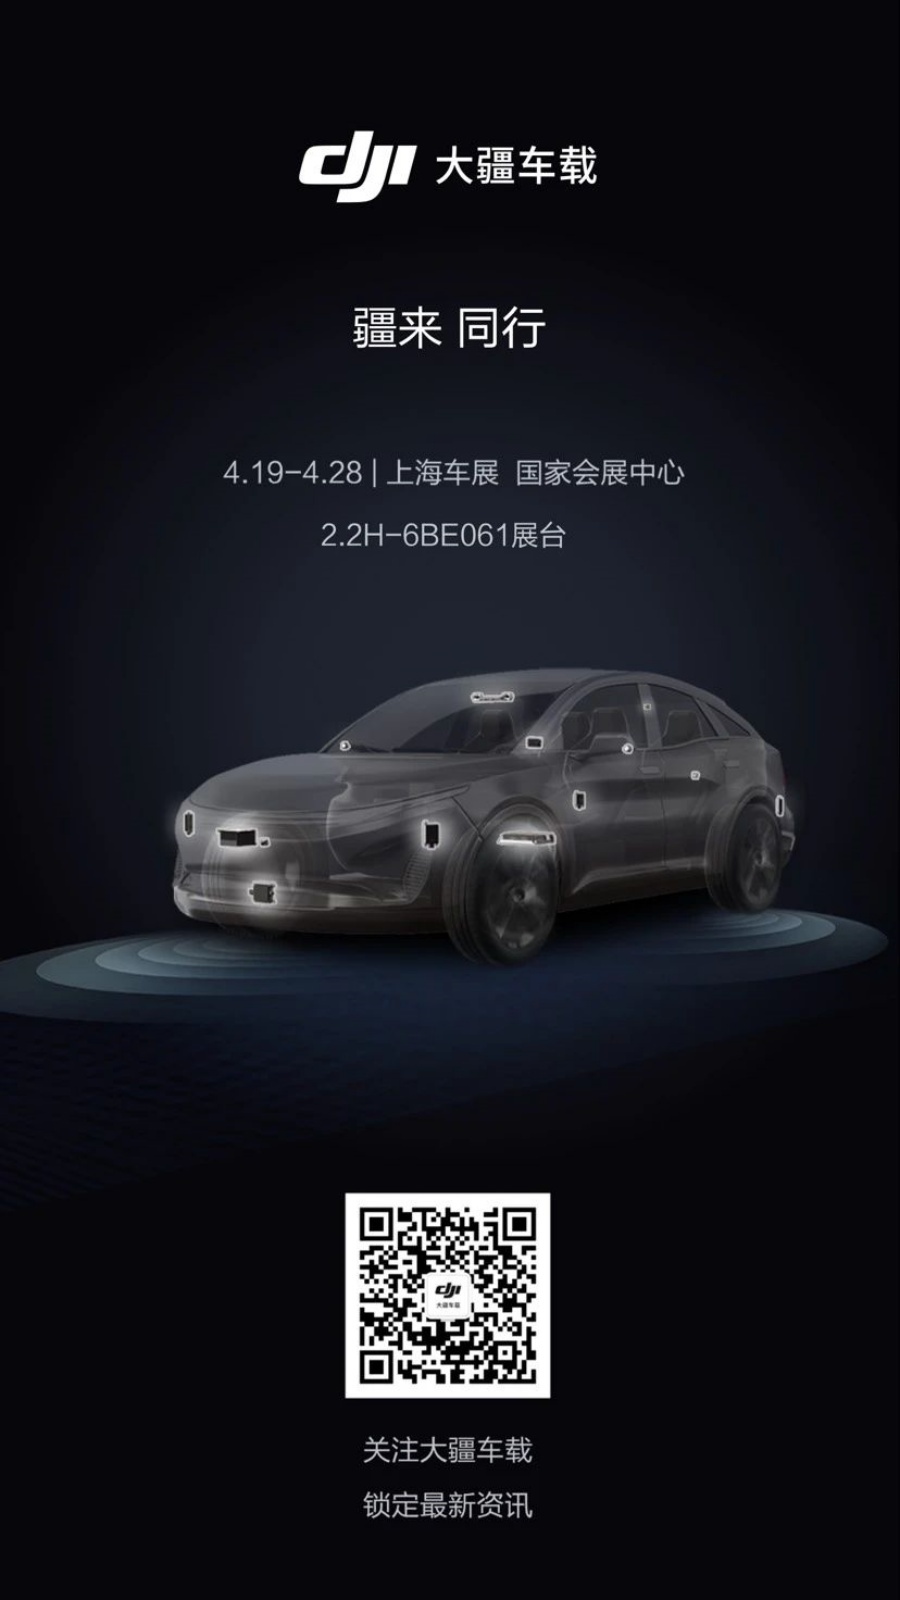 DJI 也要攻入智慧駕駛領域！4/19 將發表大疆車載品牌 